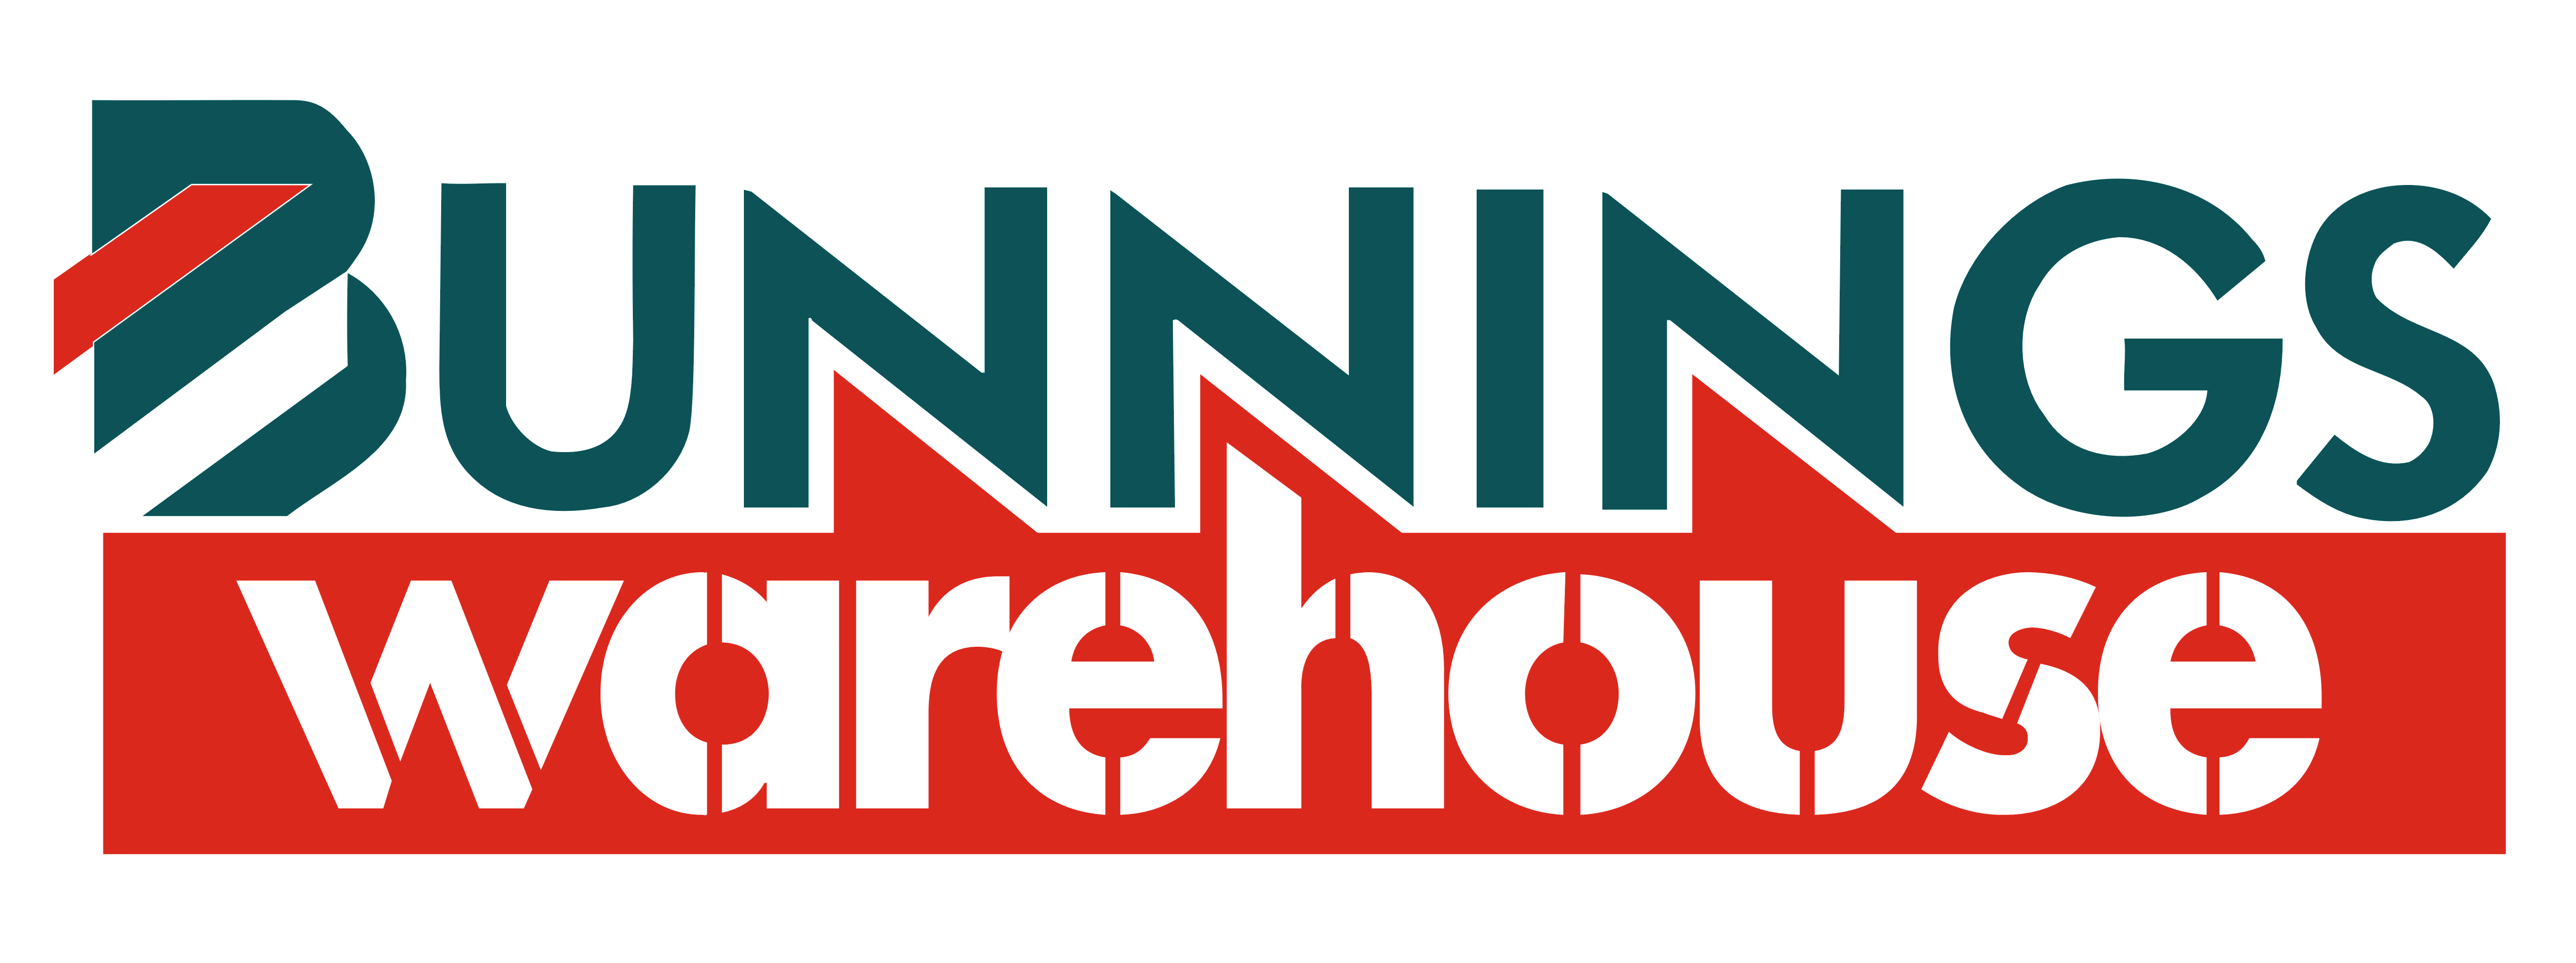 Bunnings Warehouse – Logos Download